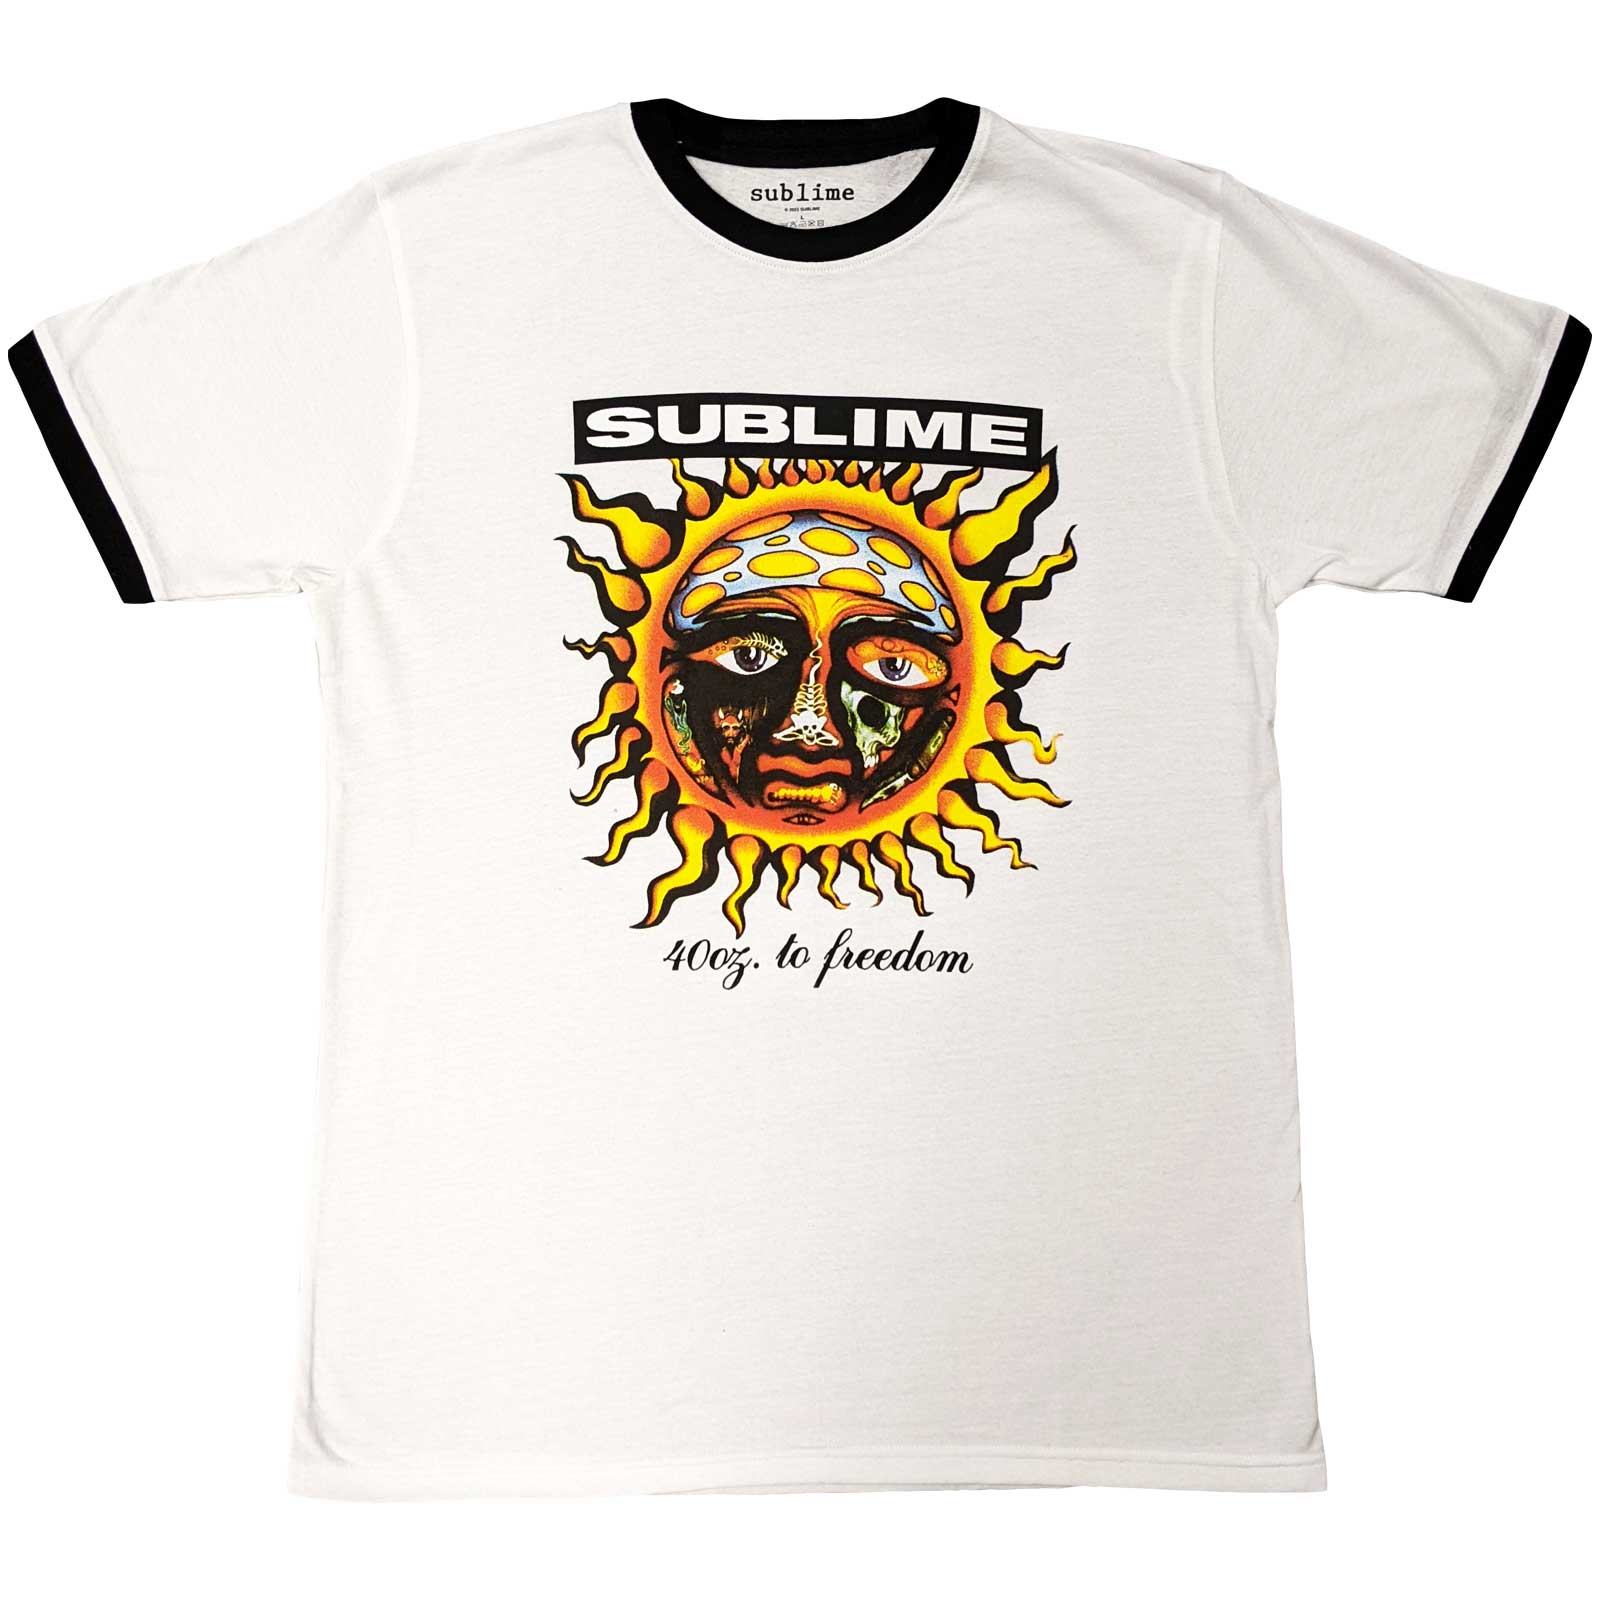 Sublime Unisex Ringer T-Shirt: 40oz. To Freedom